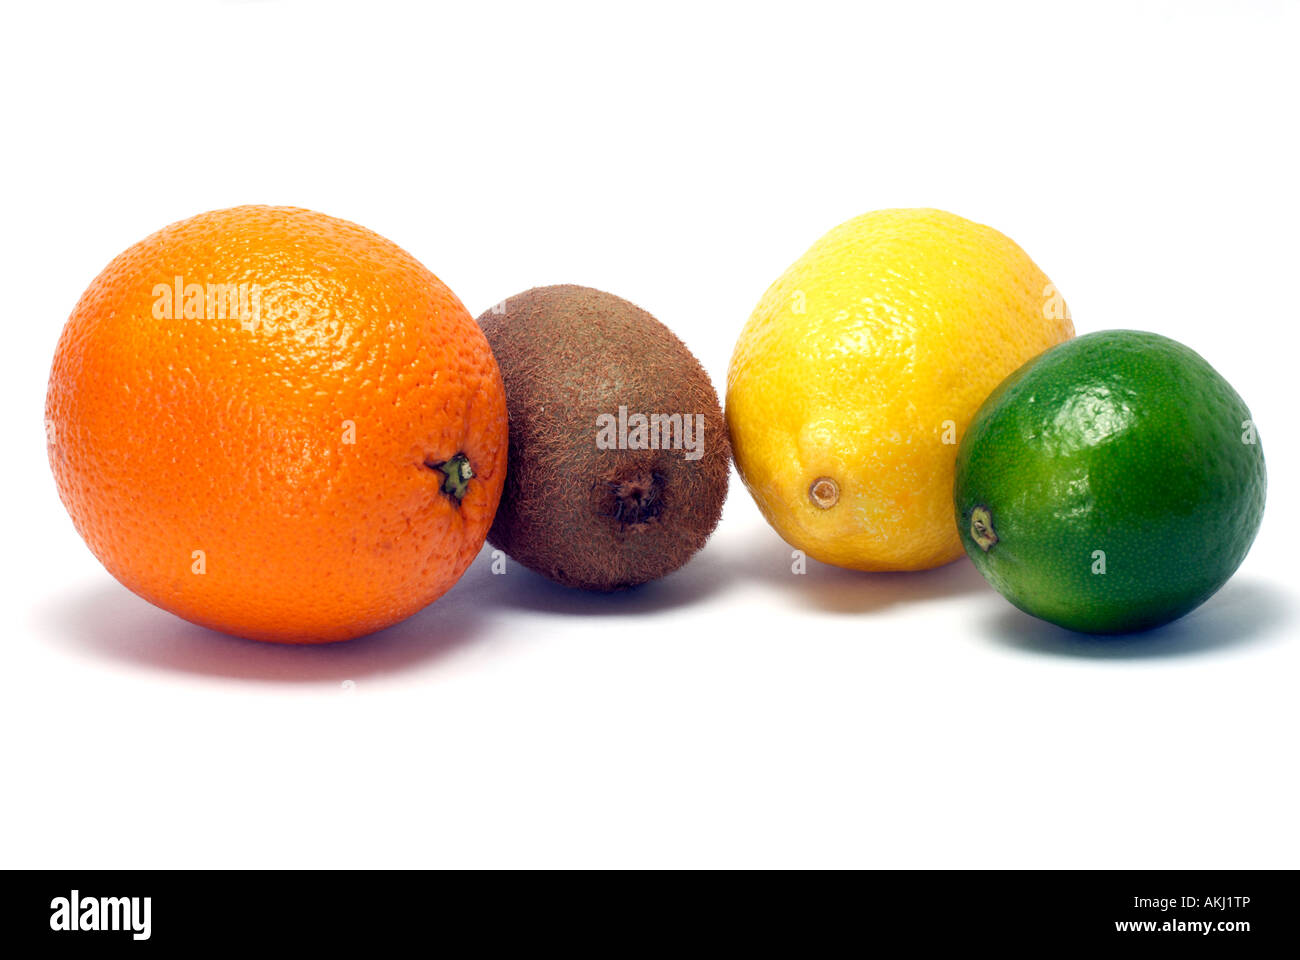 'Kiwi fruit' and whole orange, lemon  and lime Stock Photo